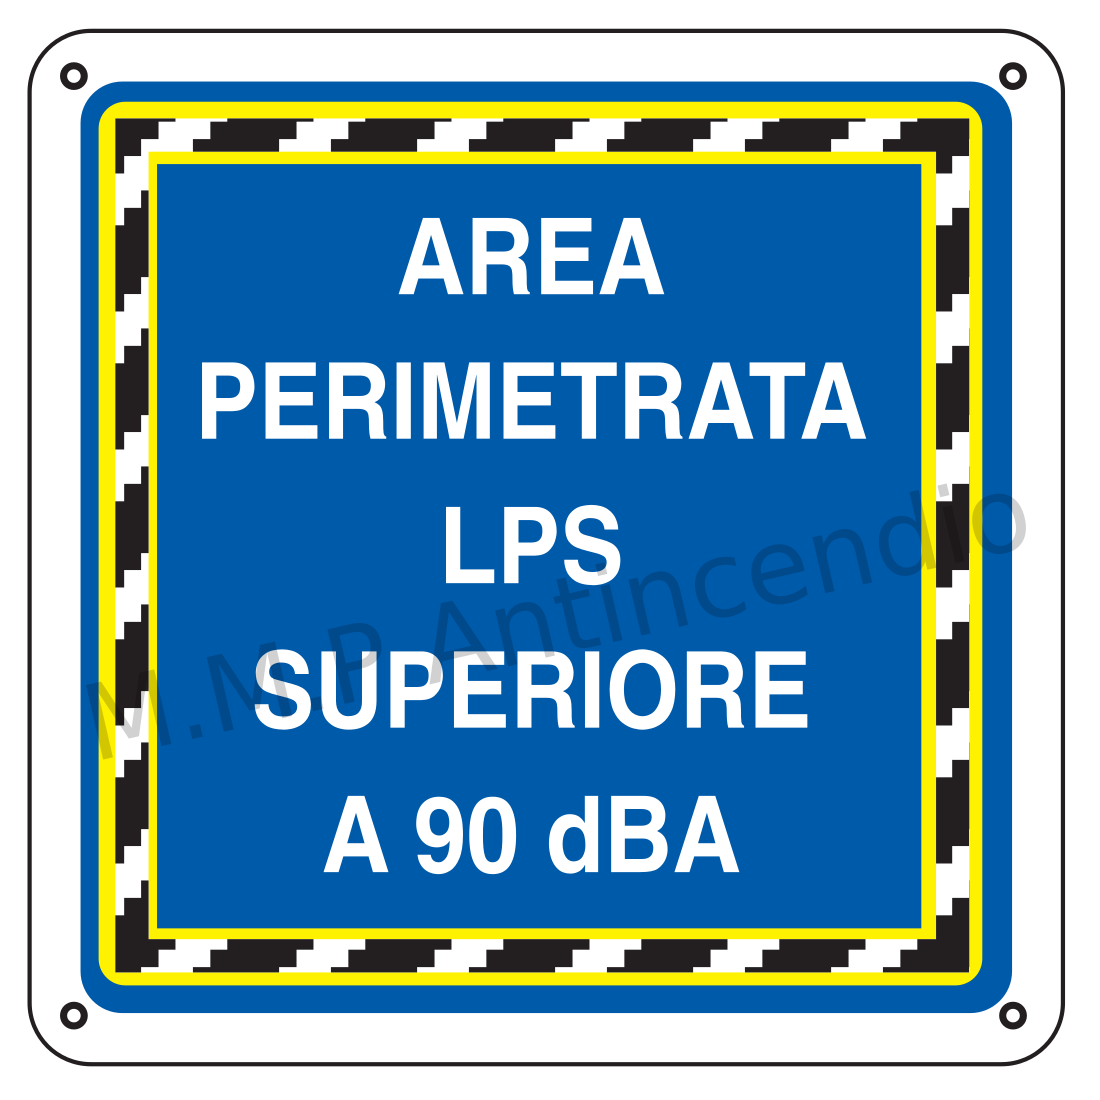 Area perimetrata LPS superiore a 90 dBA